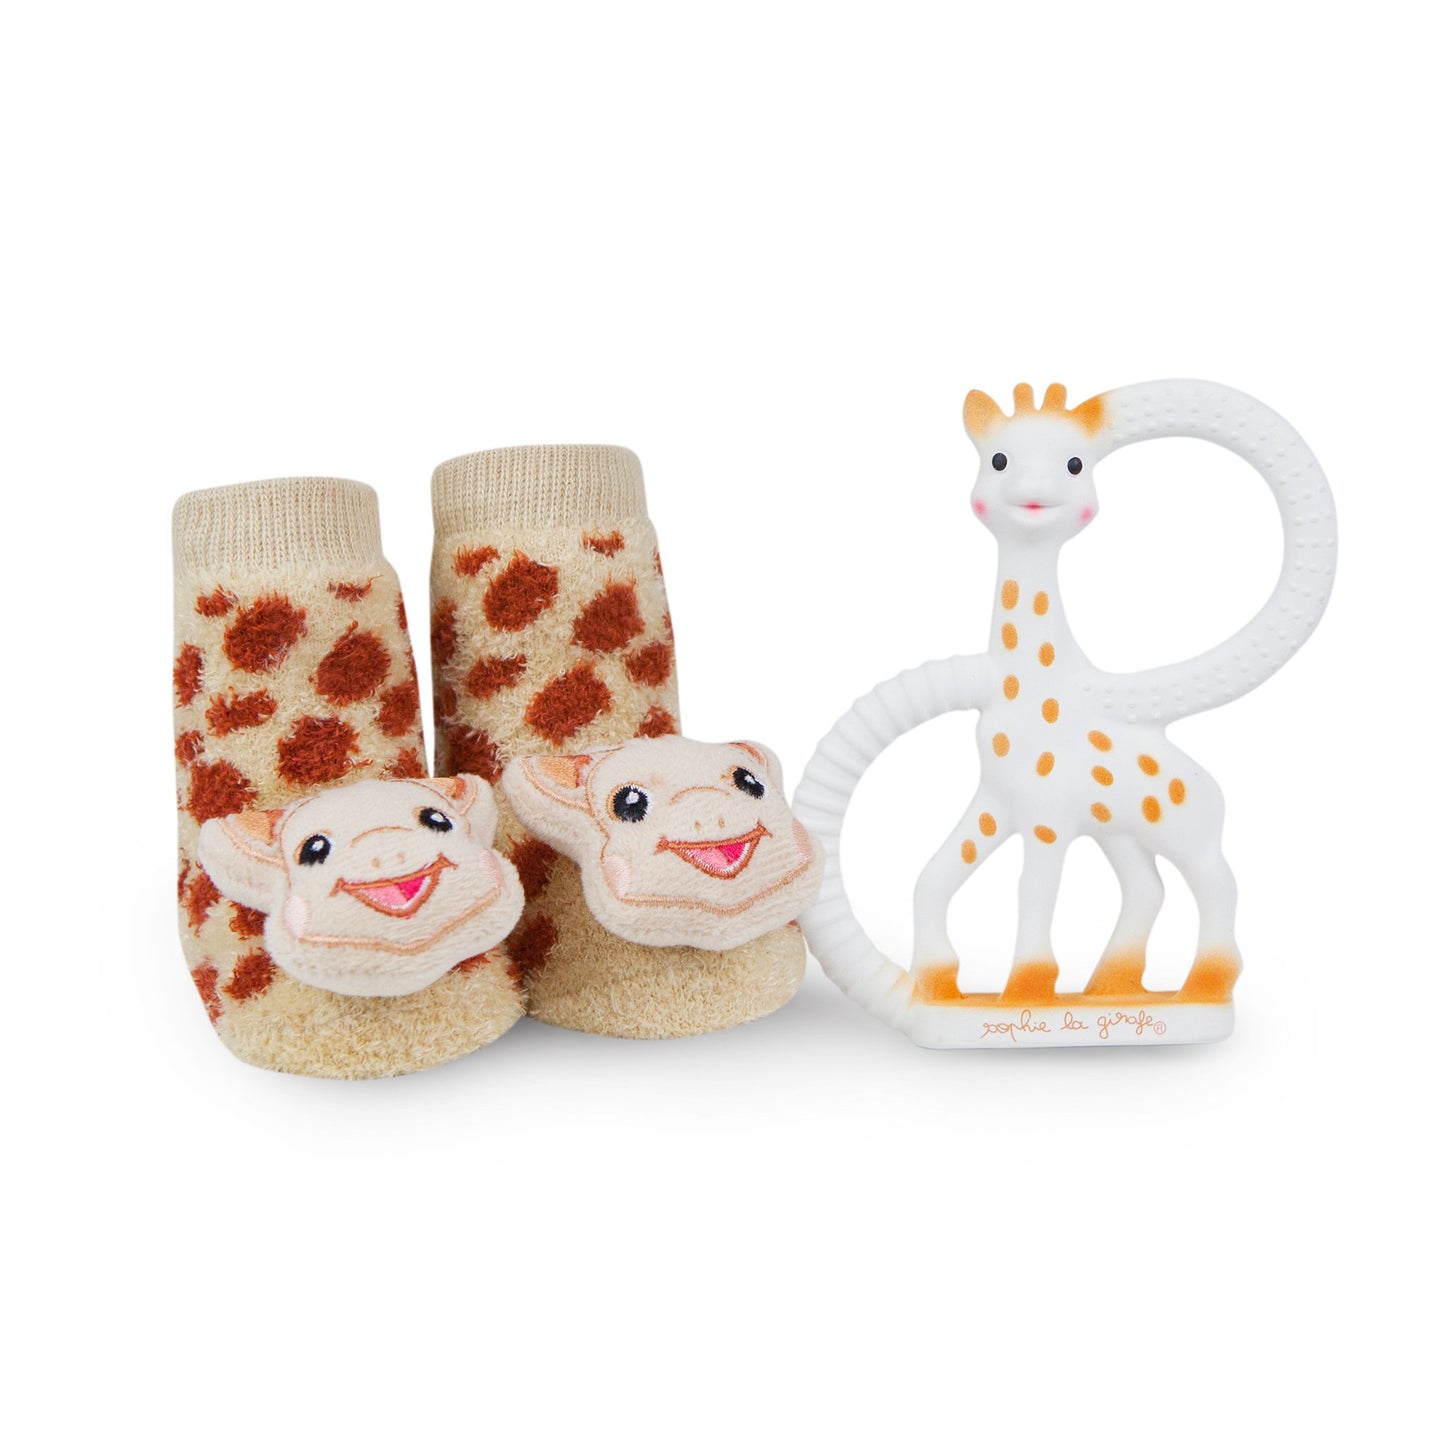 Sophie the Giraffe rattle socks & teether set